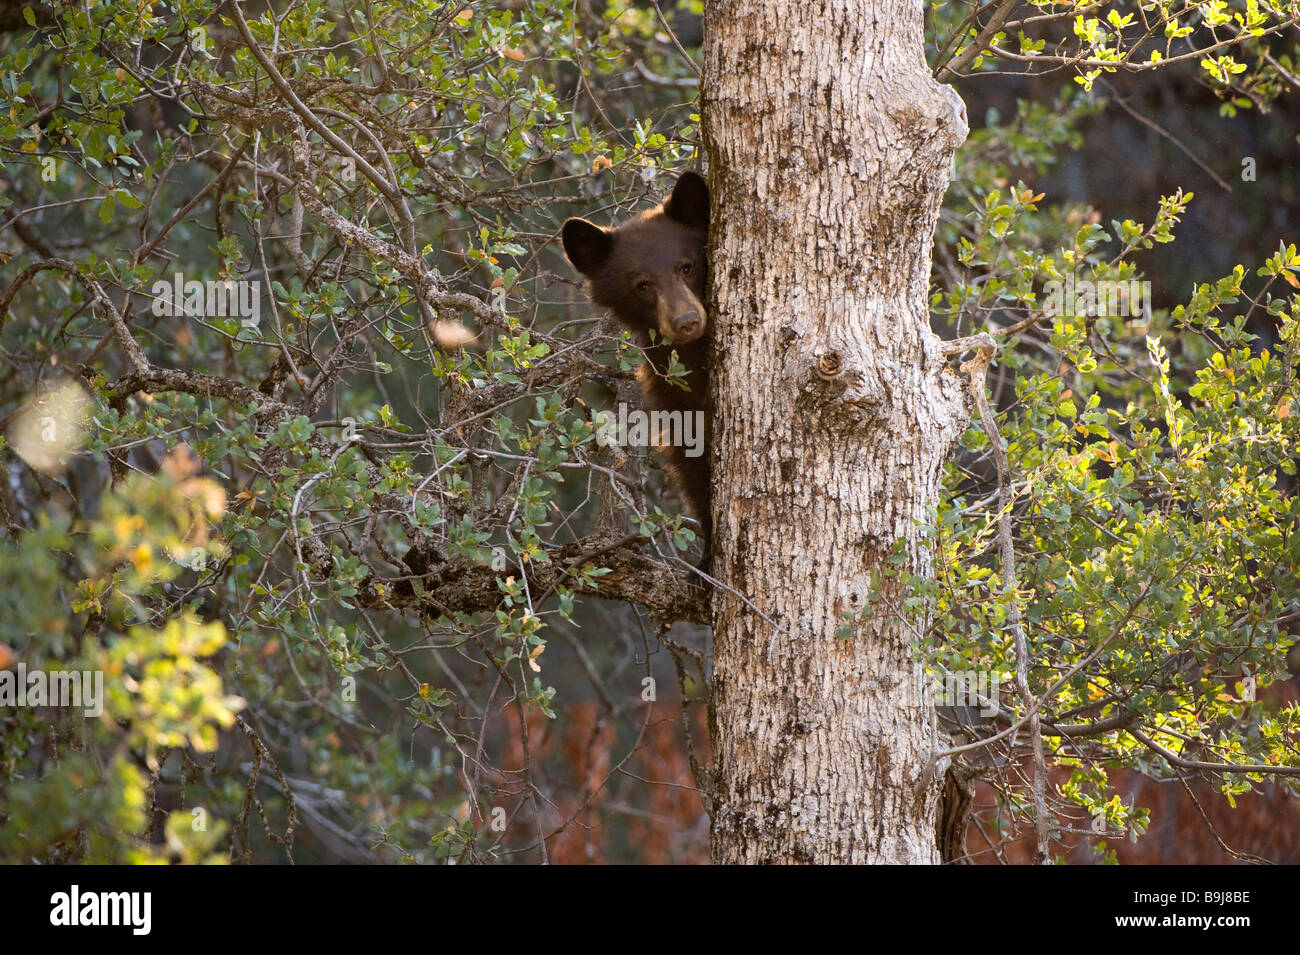 Ours noir (Ursus americanus) se reflète derrière un tronc d'arbre, Sequoia National Park, California, USA Banque D'Images